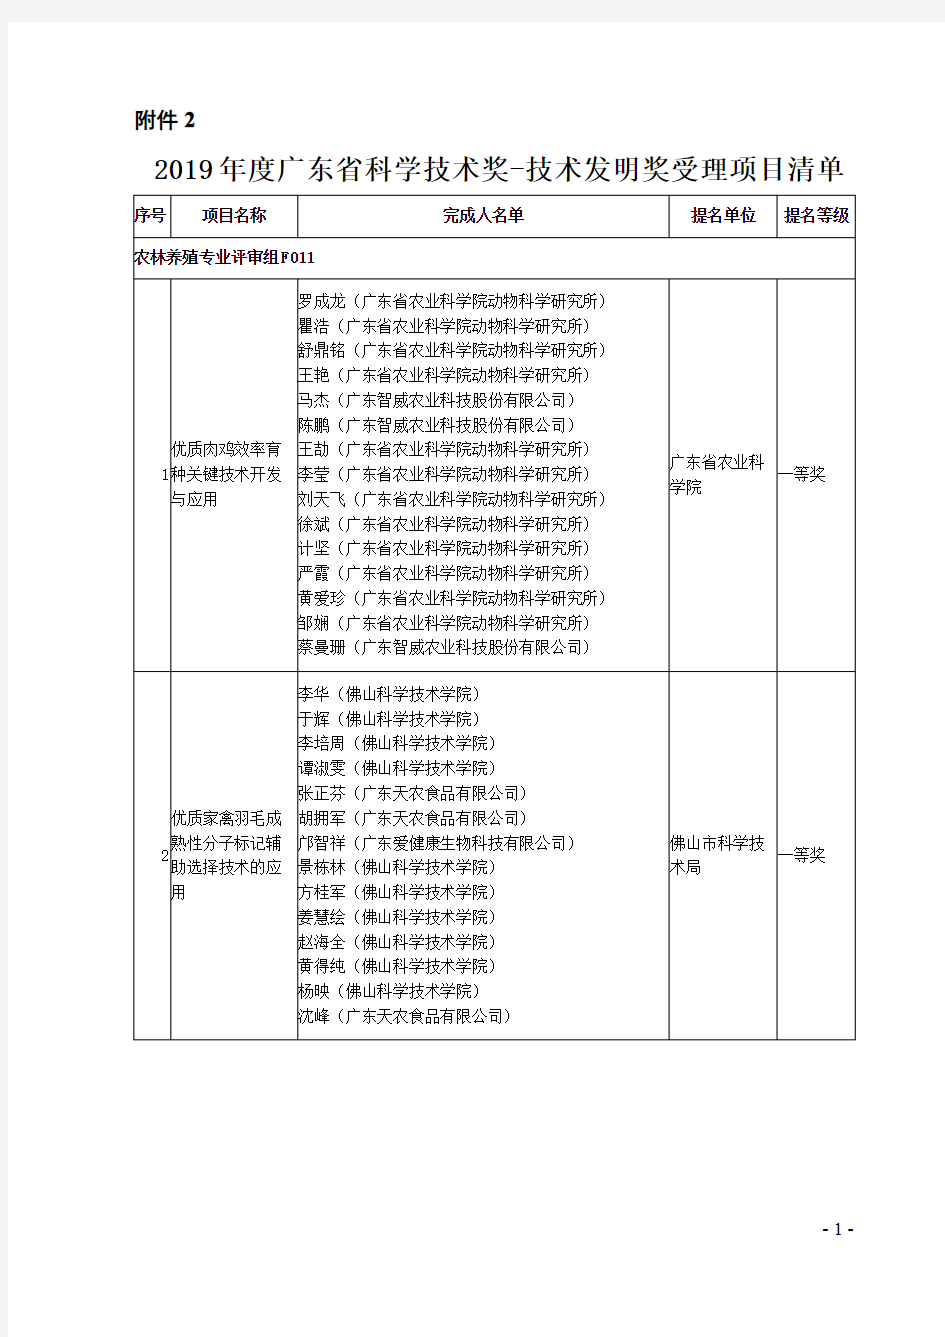 2019年度广东省科学技术奖-技术发明奖受理项目清单